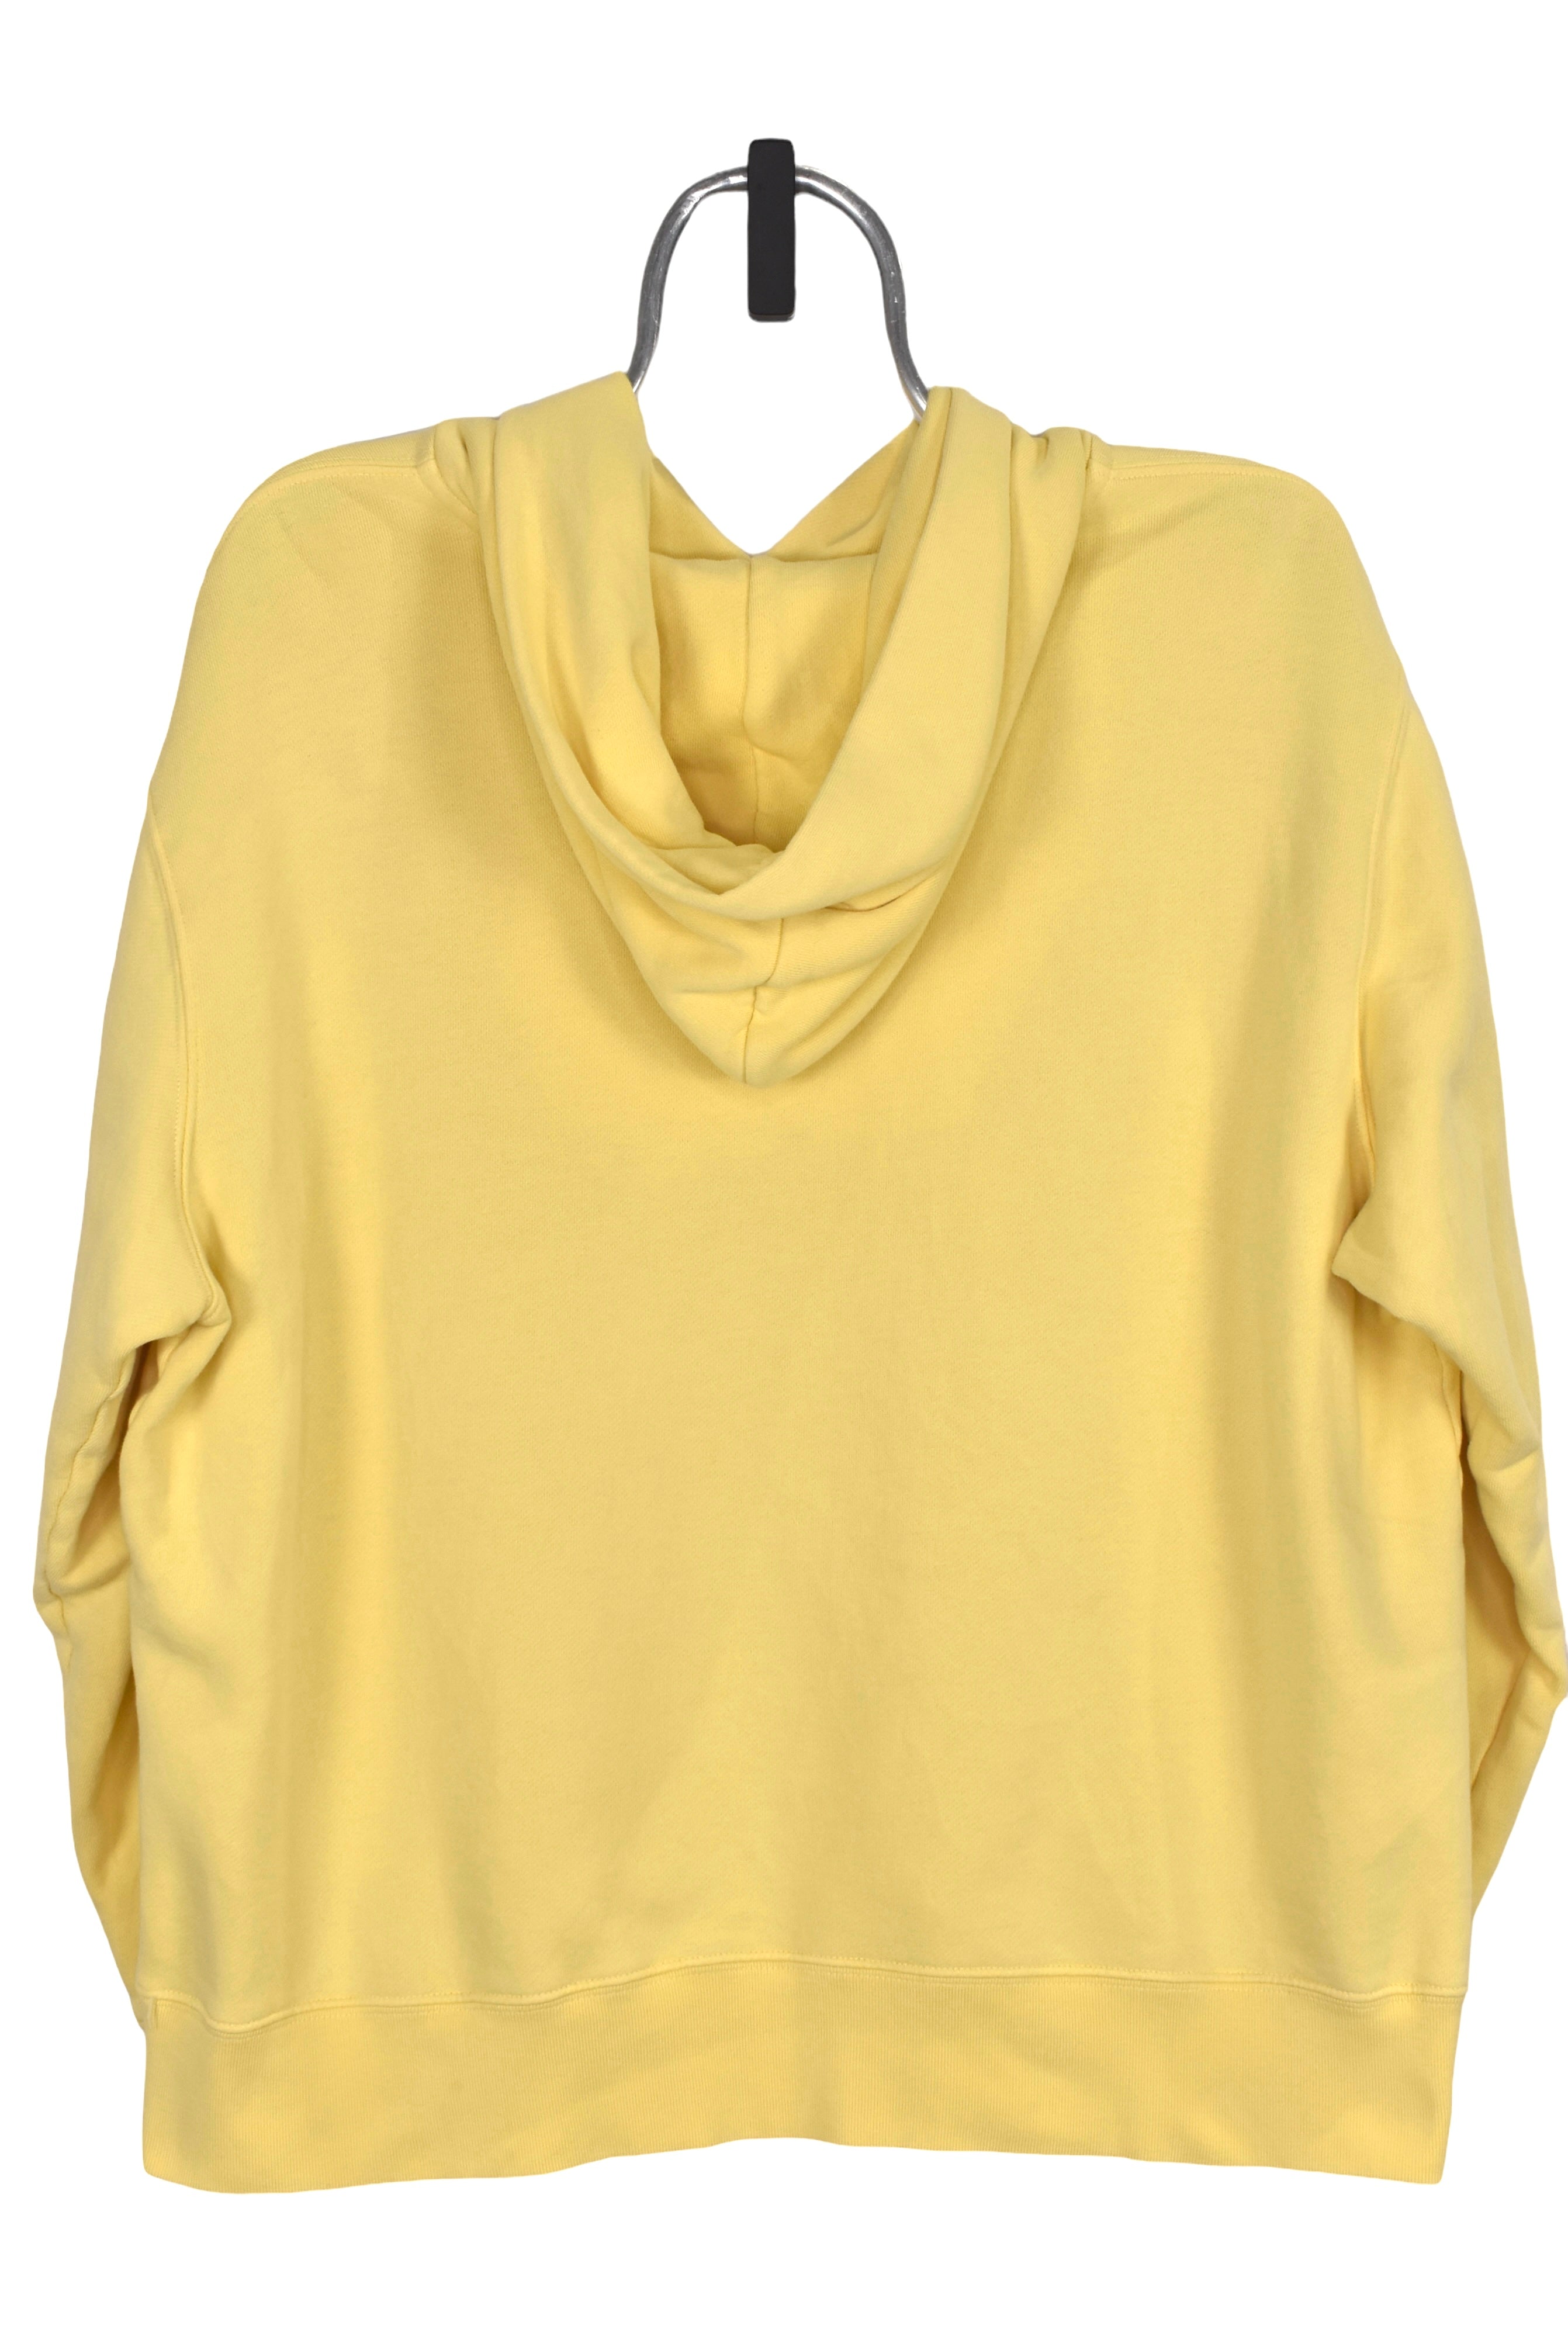 Women's vintage Tommy Hilfiger hoodie (XXL), yellow graphic sweatshirt